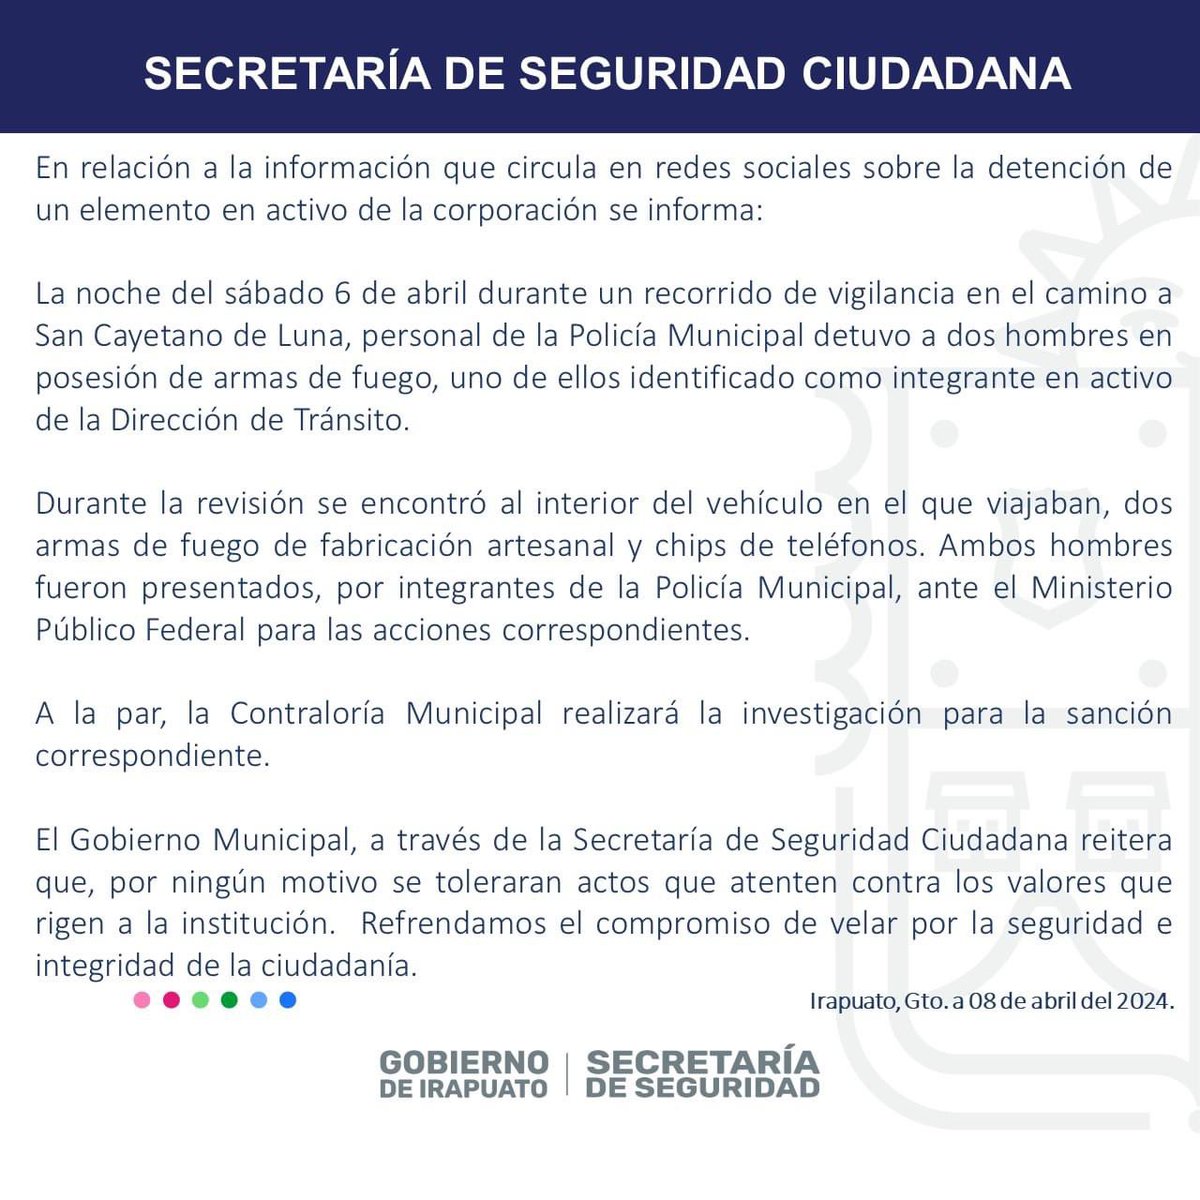 Secretaría de Seguridad Ciudadana 👮🏻‍♀️ (@segpublicaira) on Twitter photo 2024-04-08 18:59:30